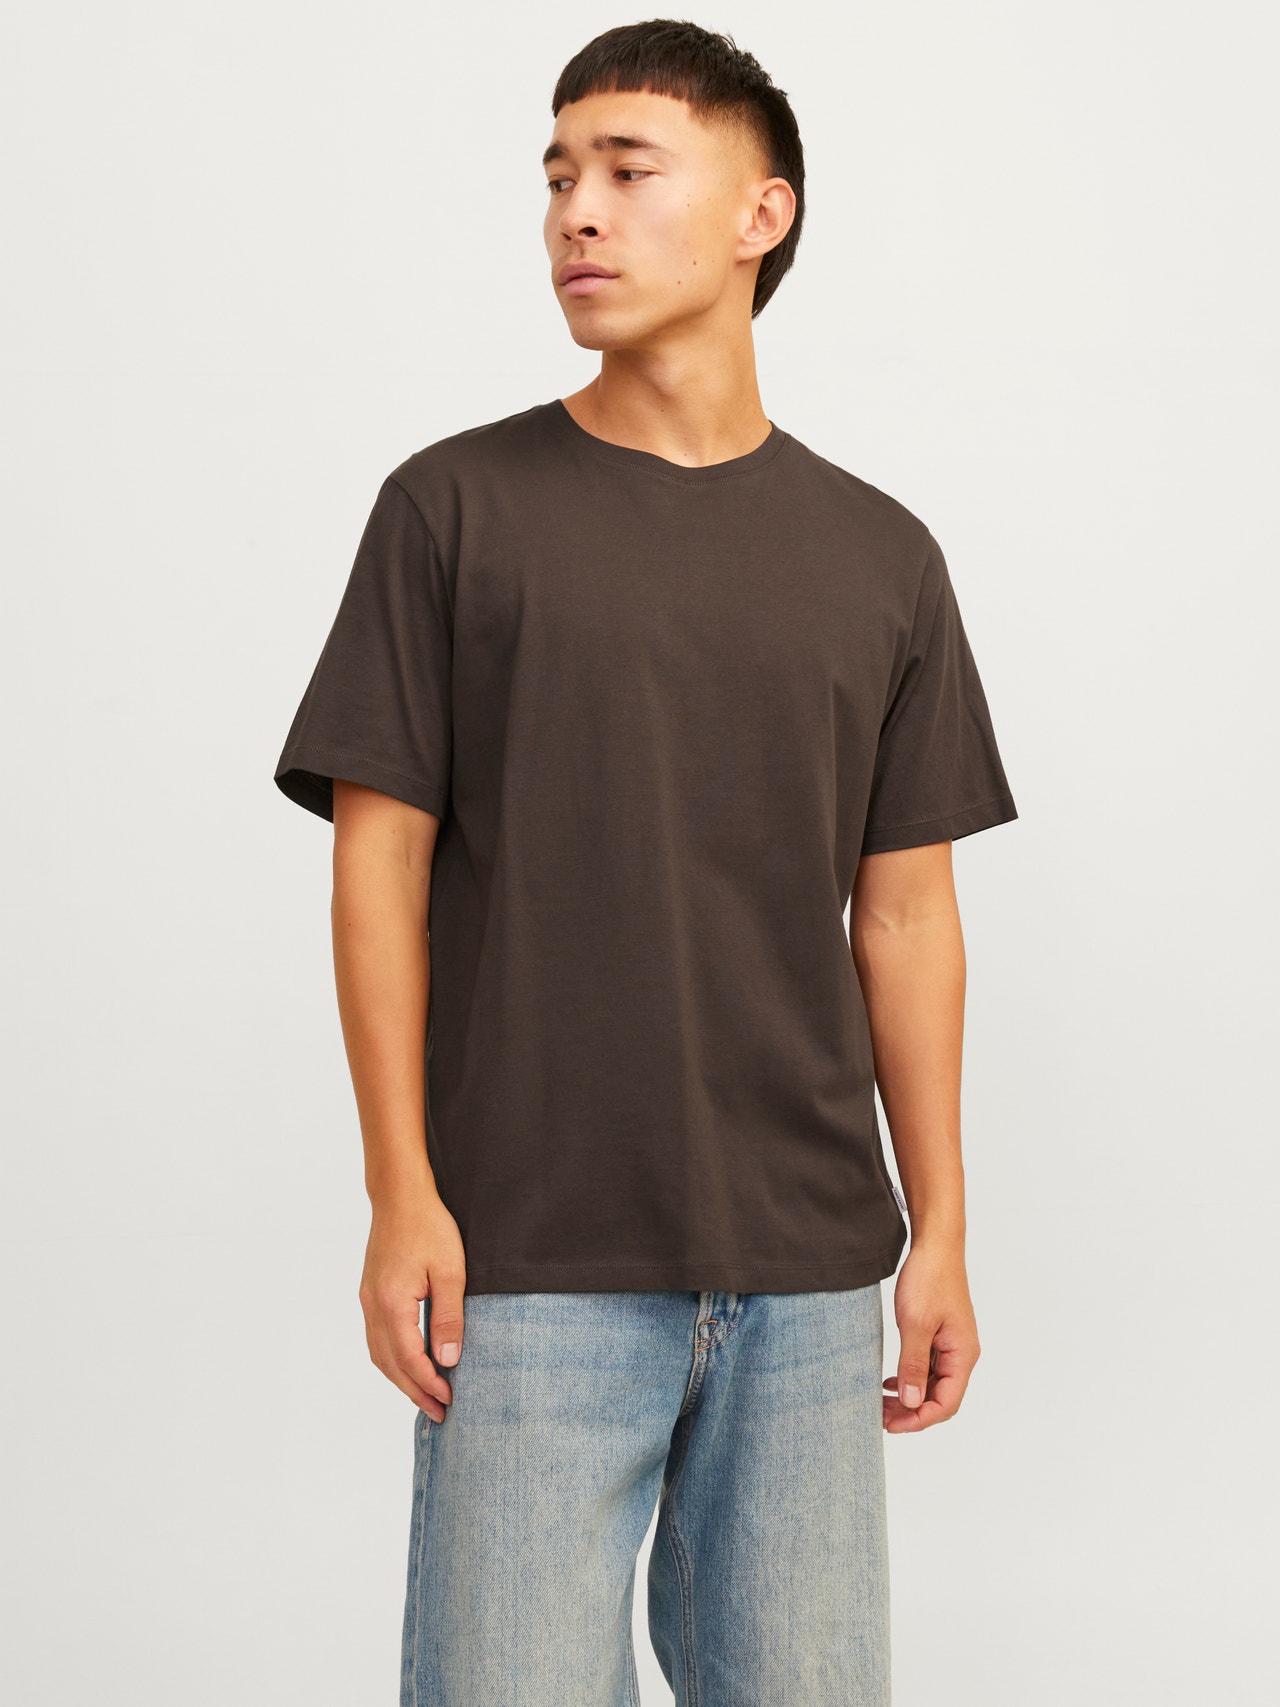 Jack & Jones T-shirt Liso Decote Redondo -Mulch - 12156101